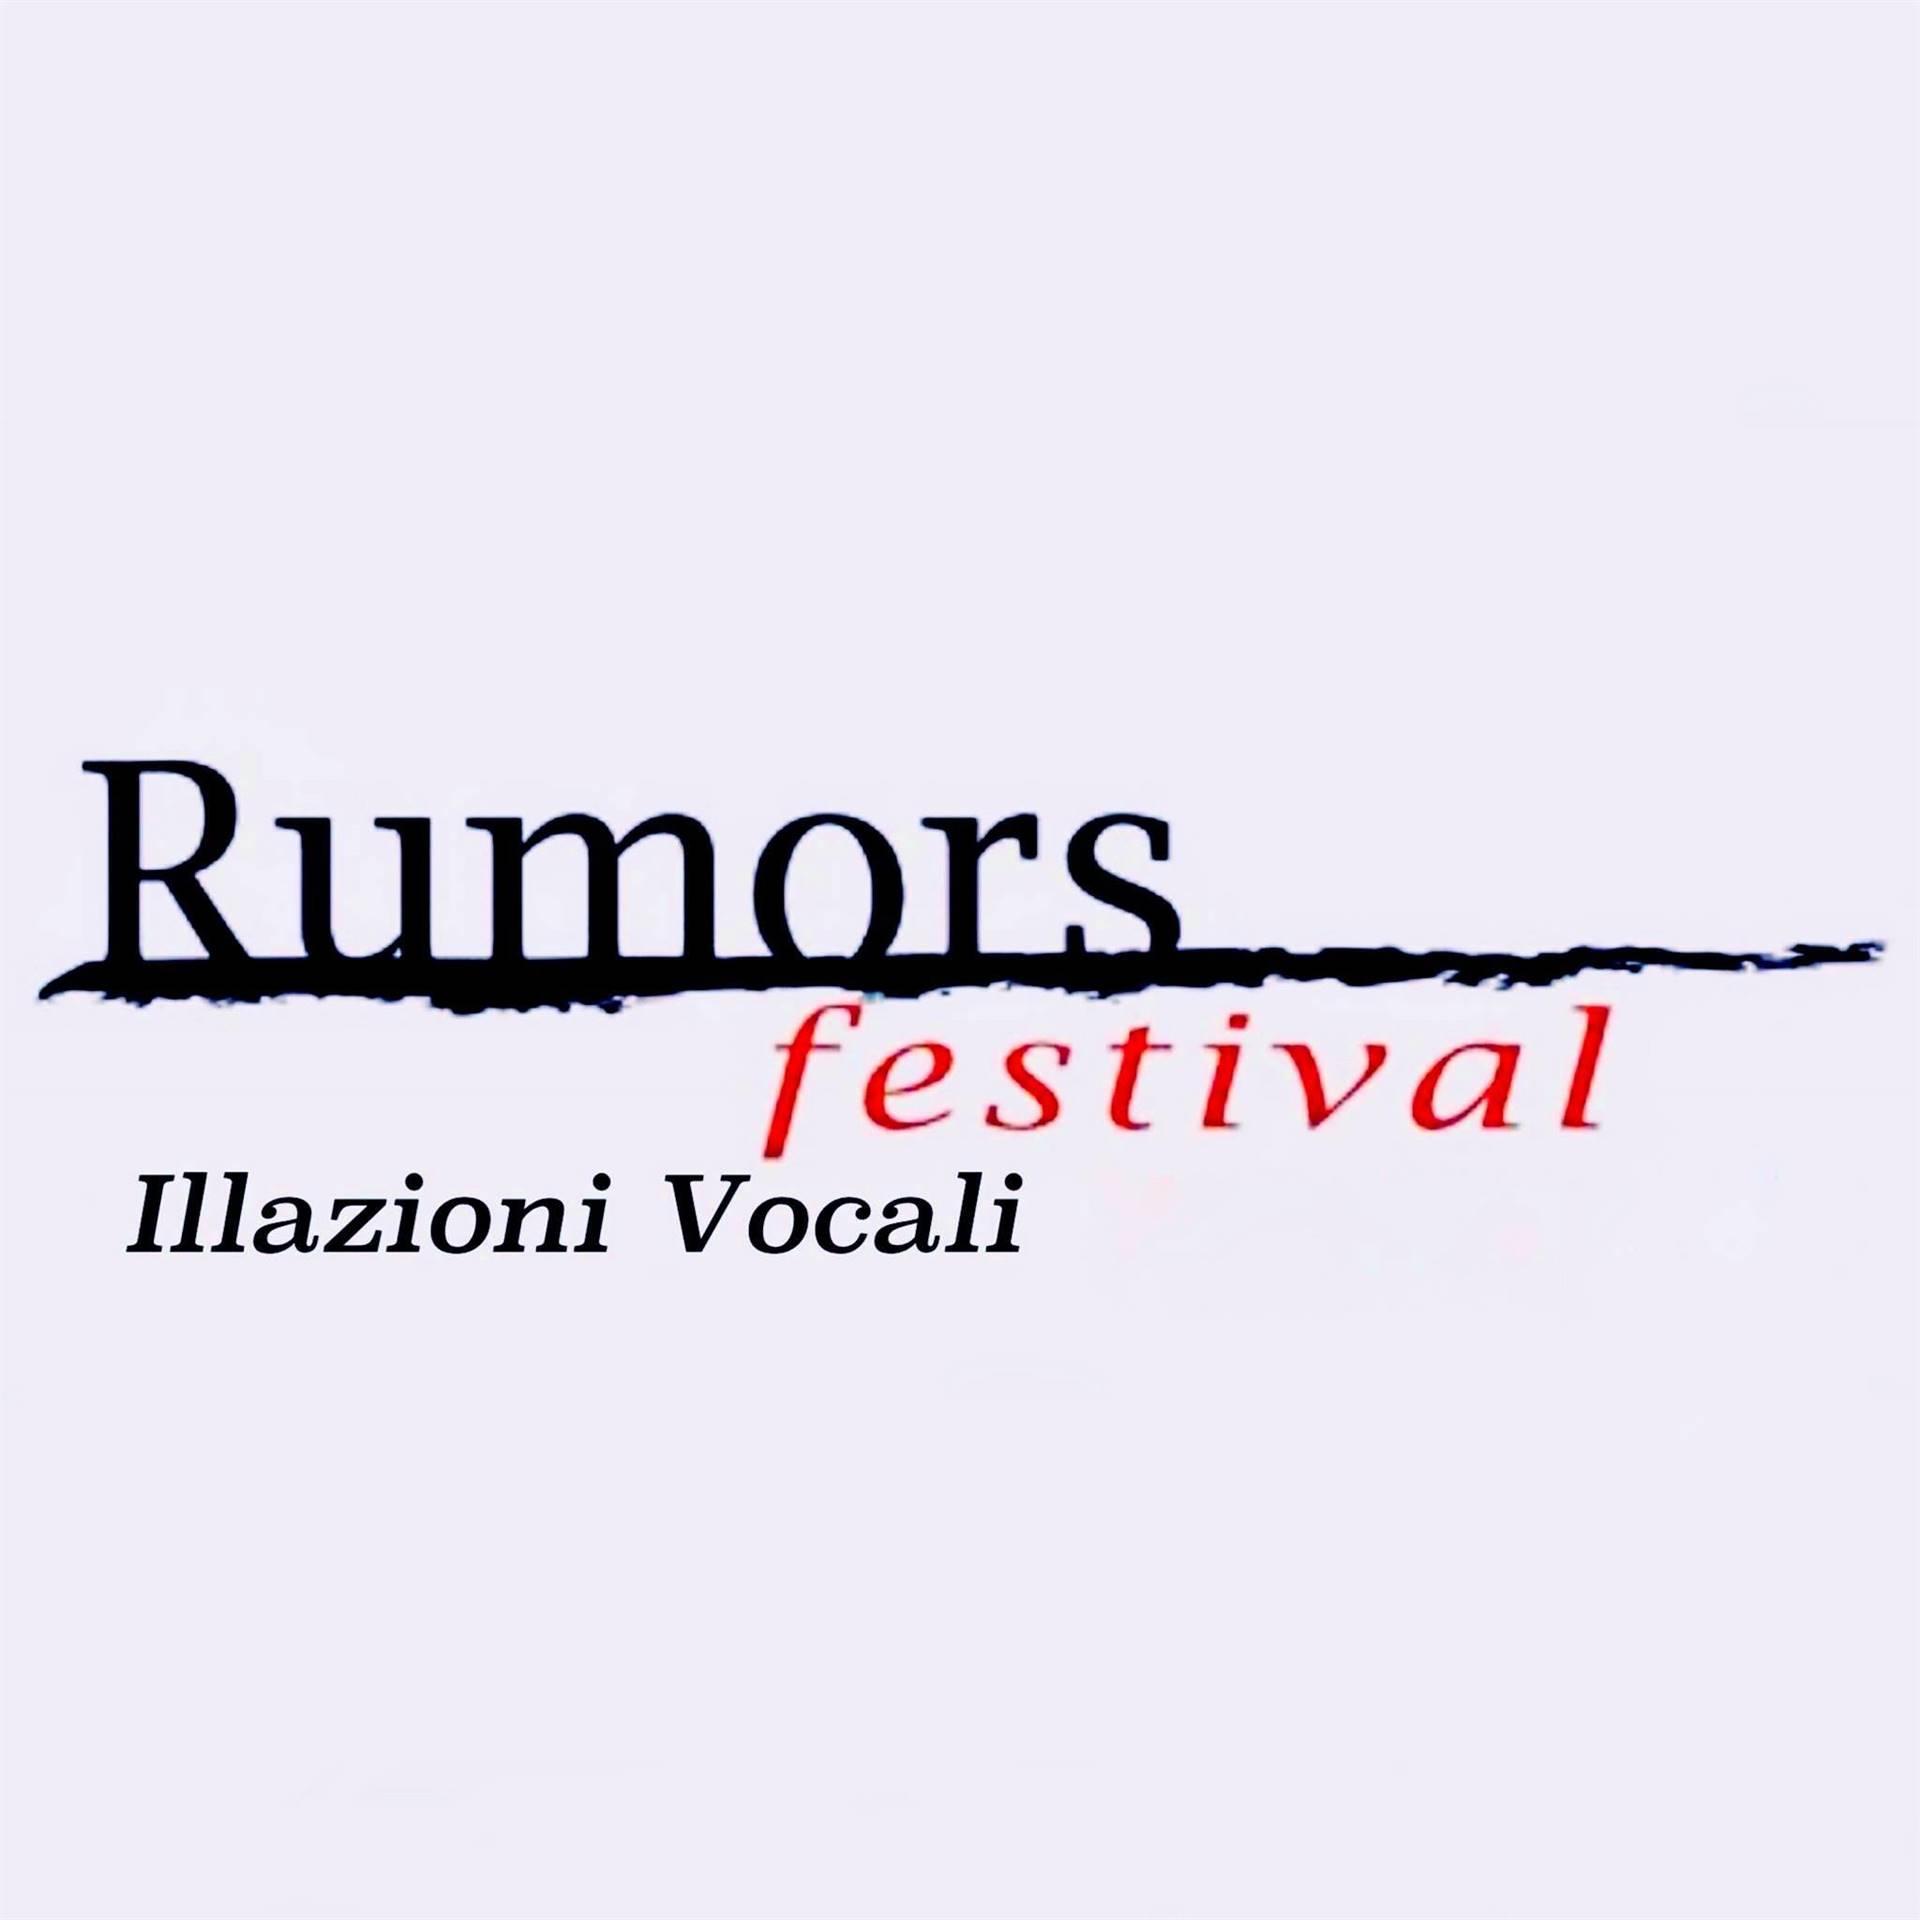 Rumors Festival - Illazioni Vocali Verona 